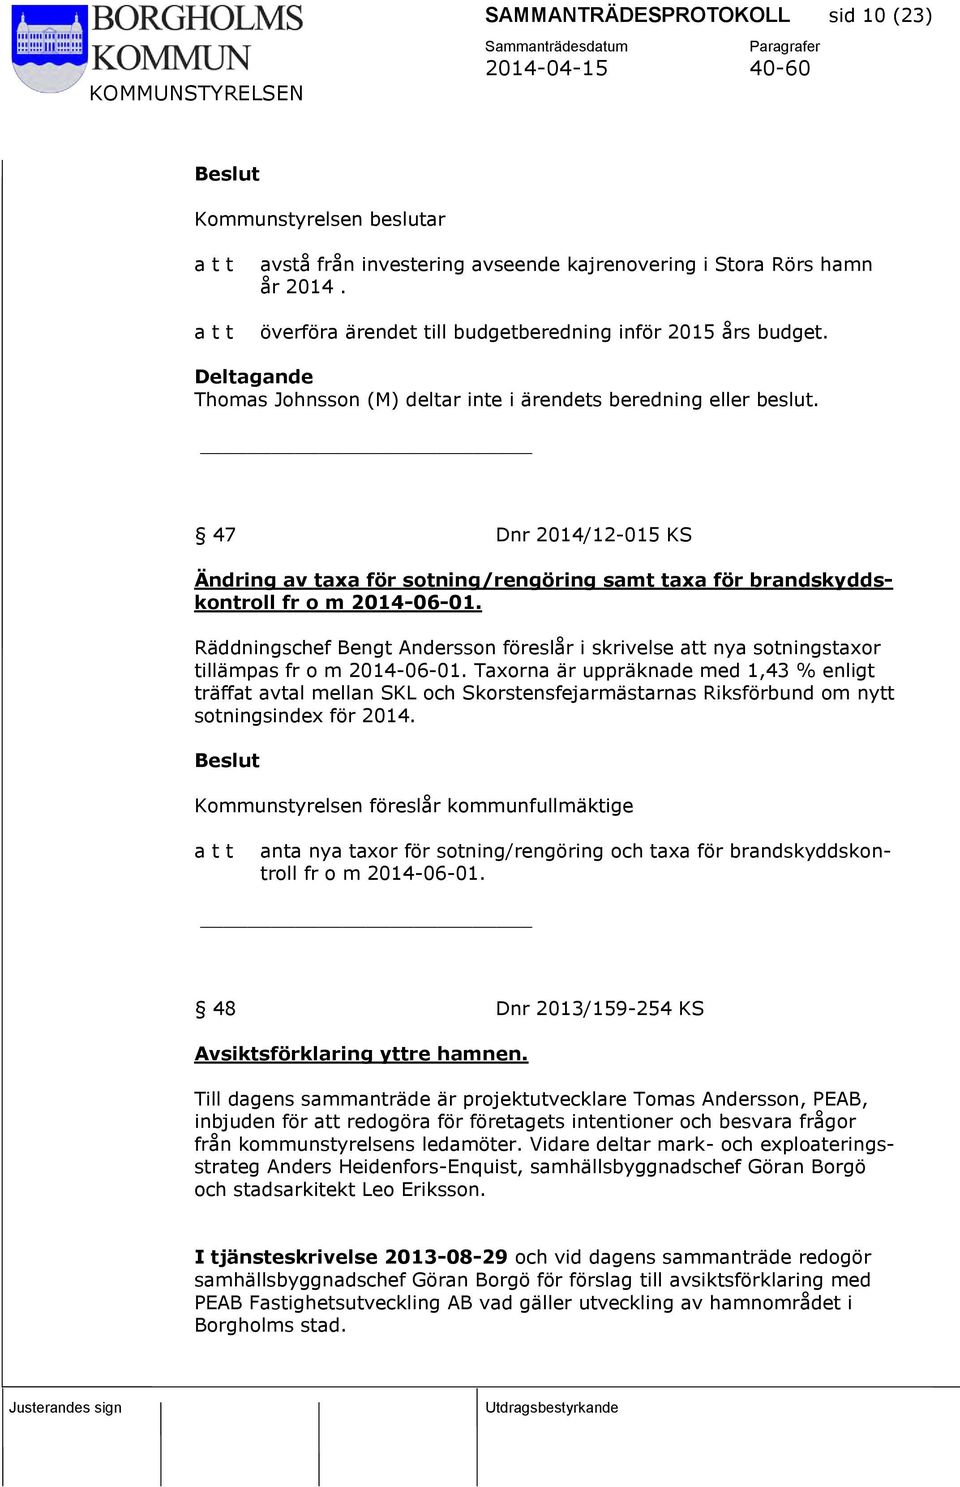 Räddningschef Bengt Andersson föreslår i skrivelse att nya sotningstaxor tillämpas fr o m 2014-06-01.